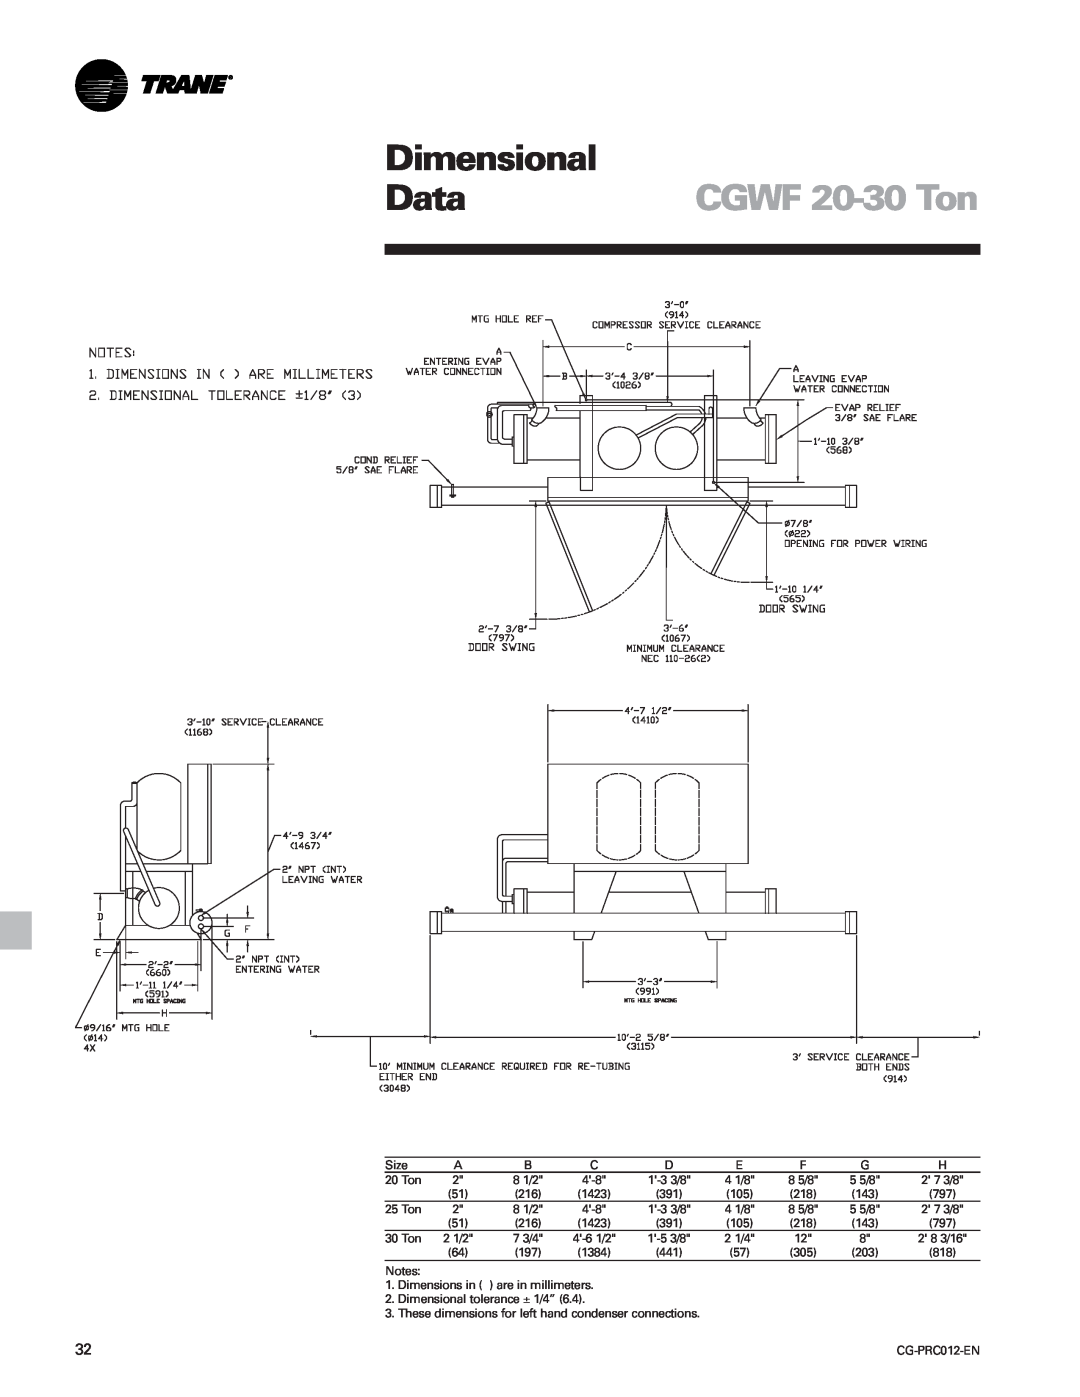 Trane CCAF manual Dimensional, CGWF 20-30 Ton, Data 